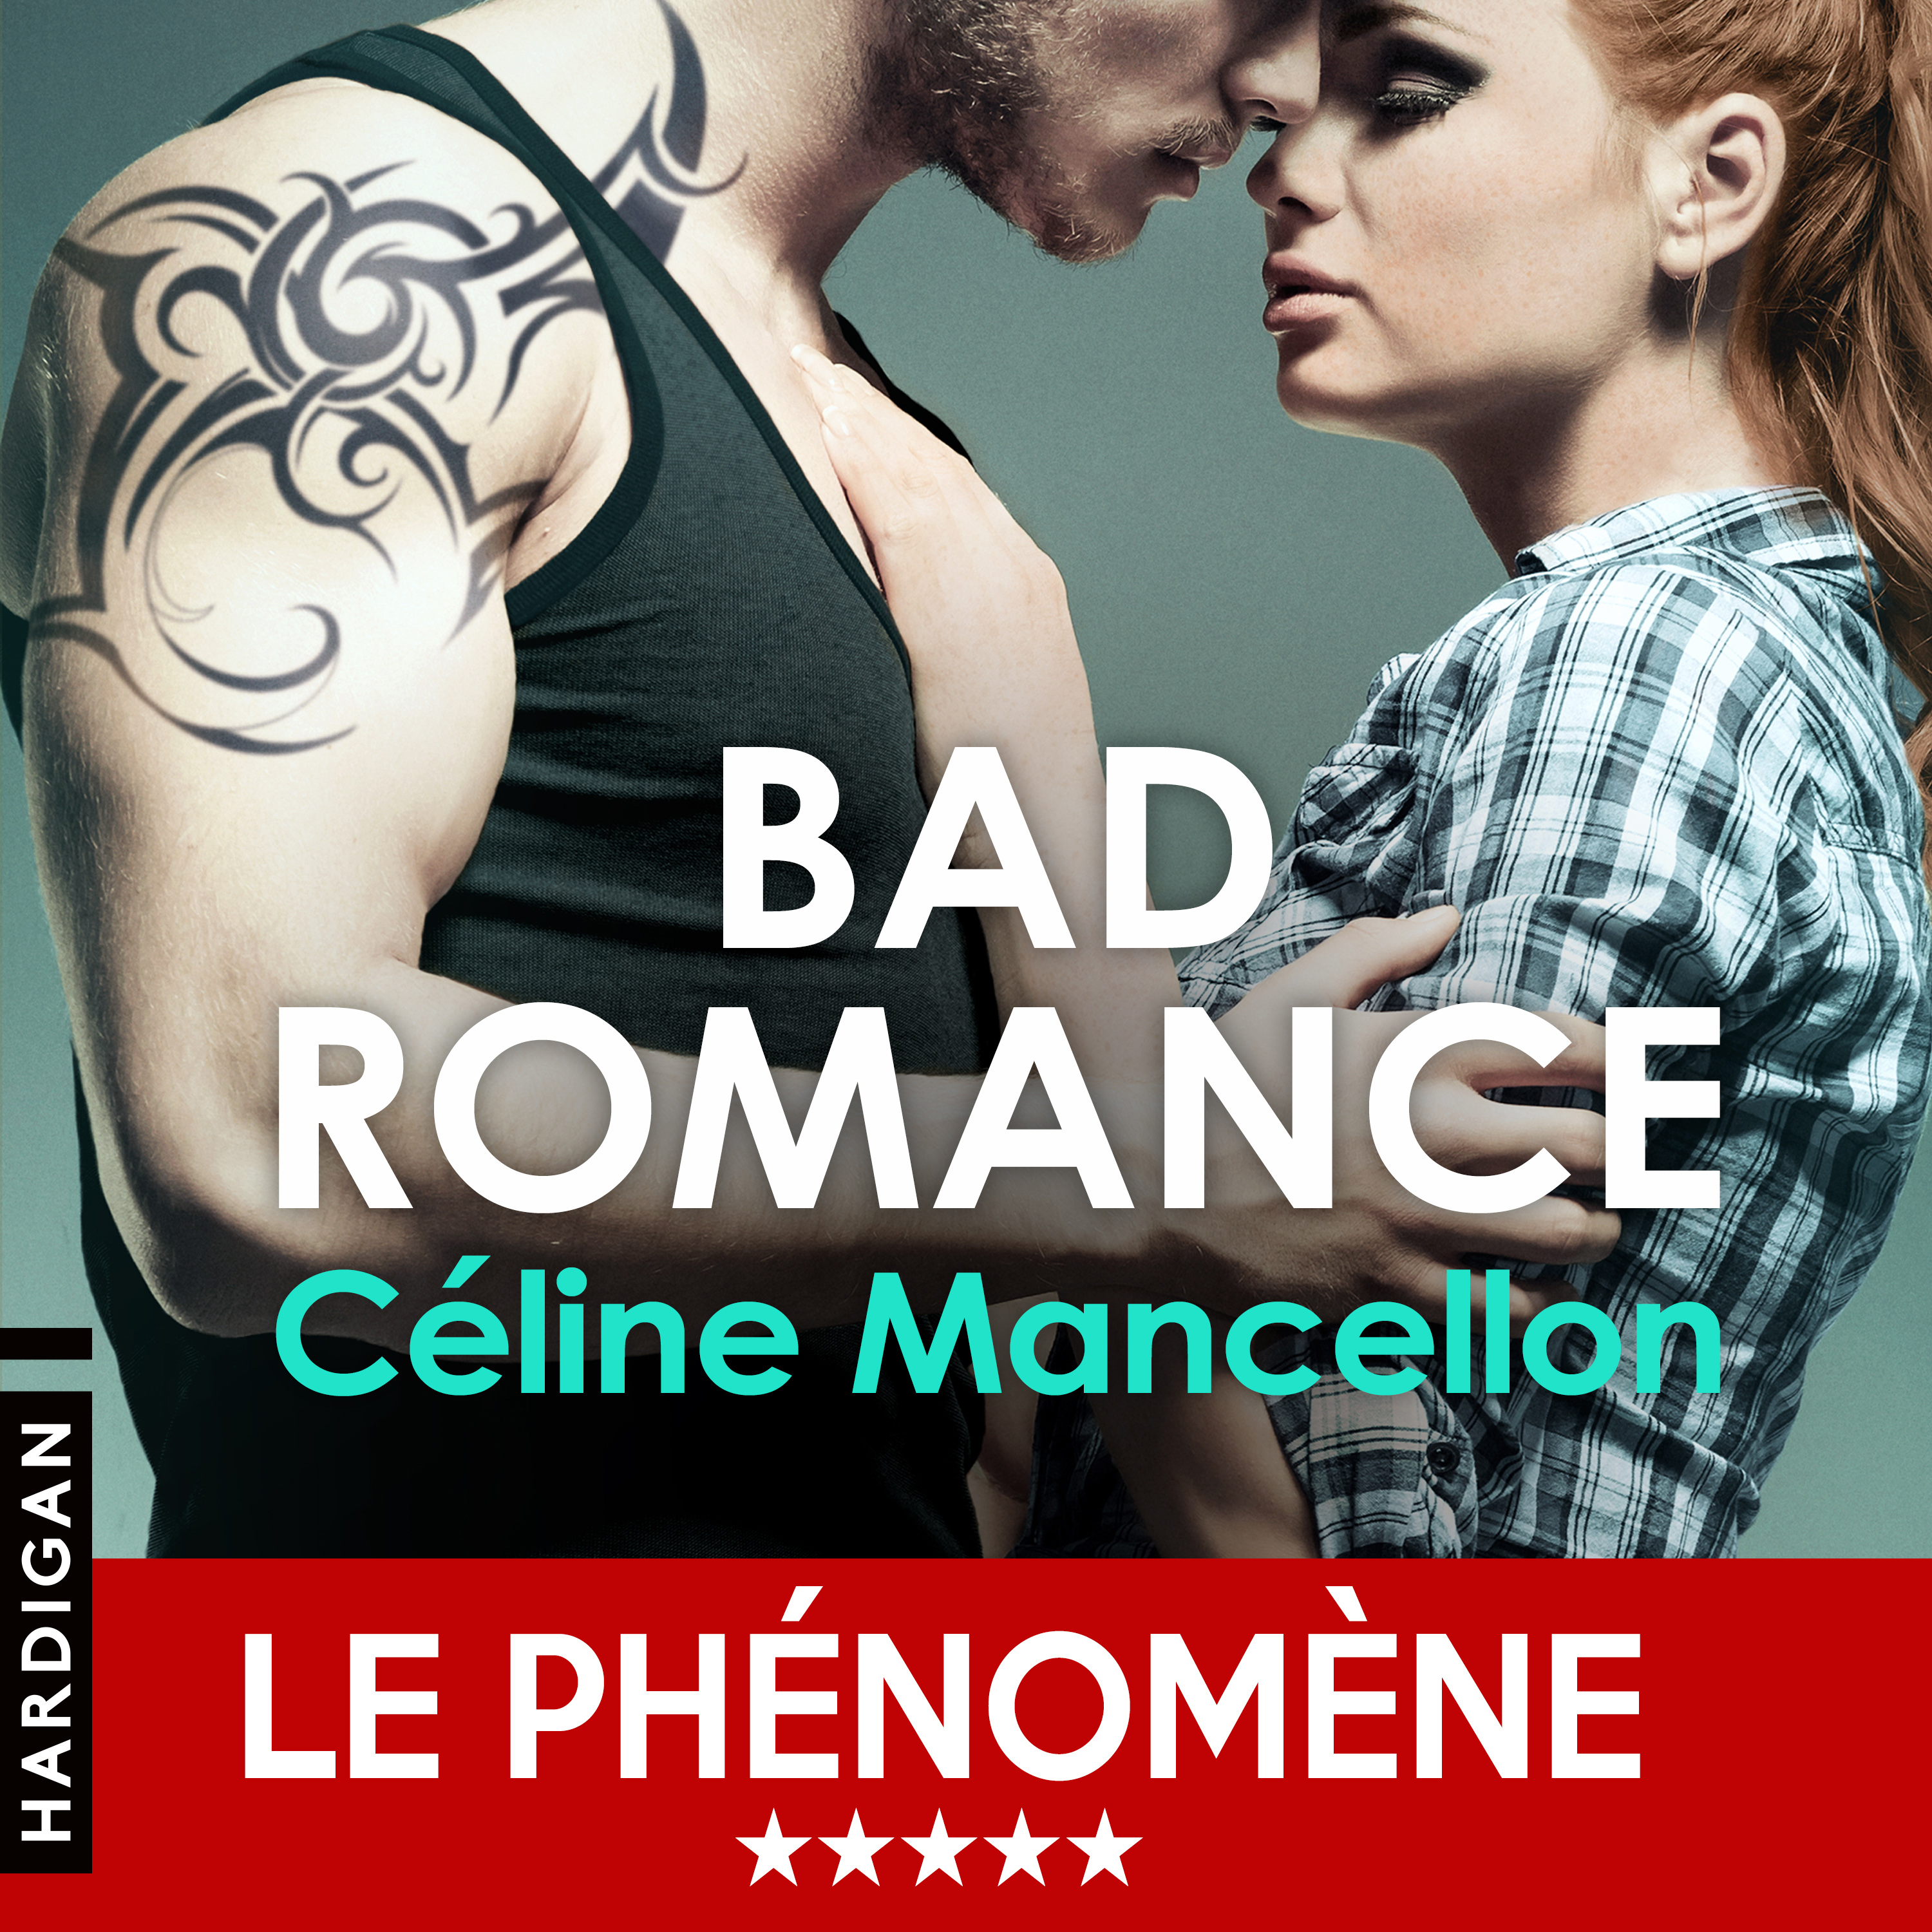 Couverture du livre audio Bad Romance #1 De Céline Mancellon 